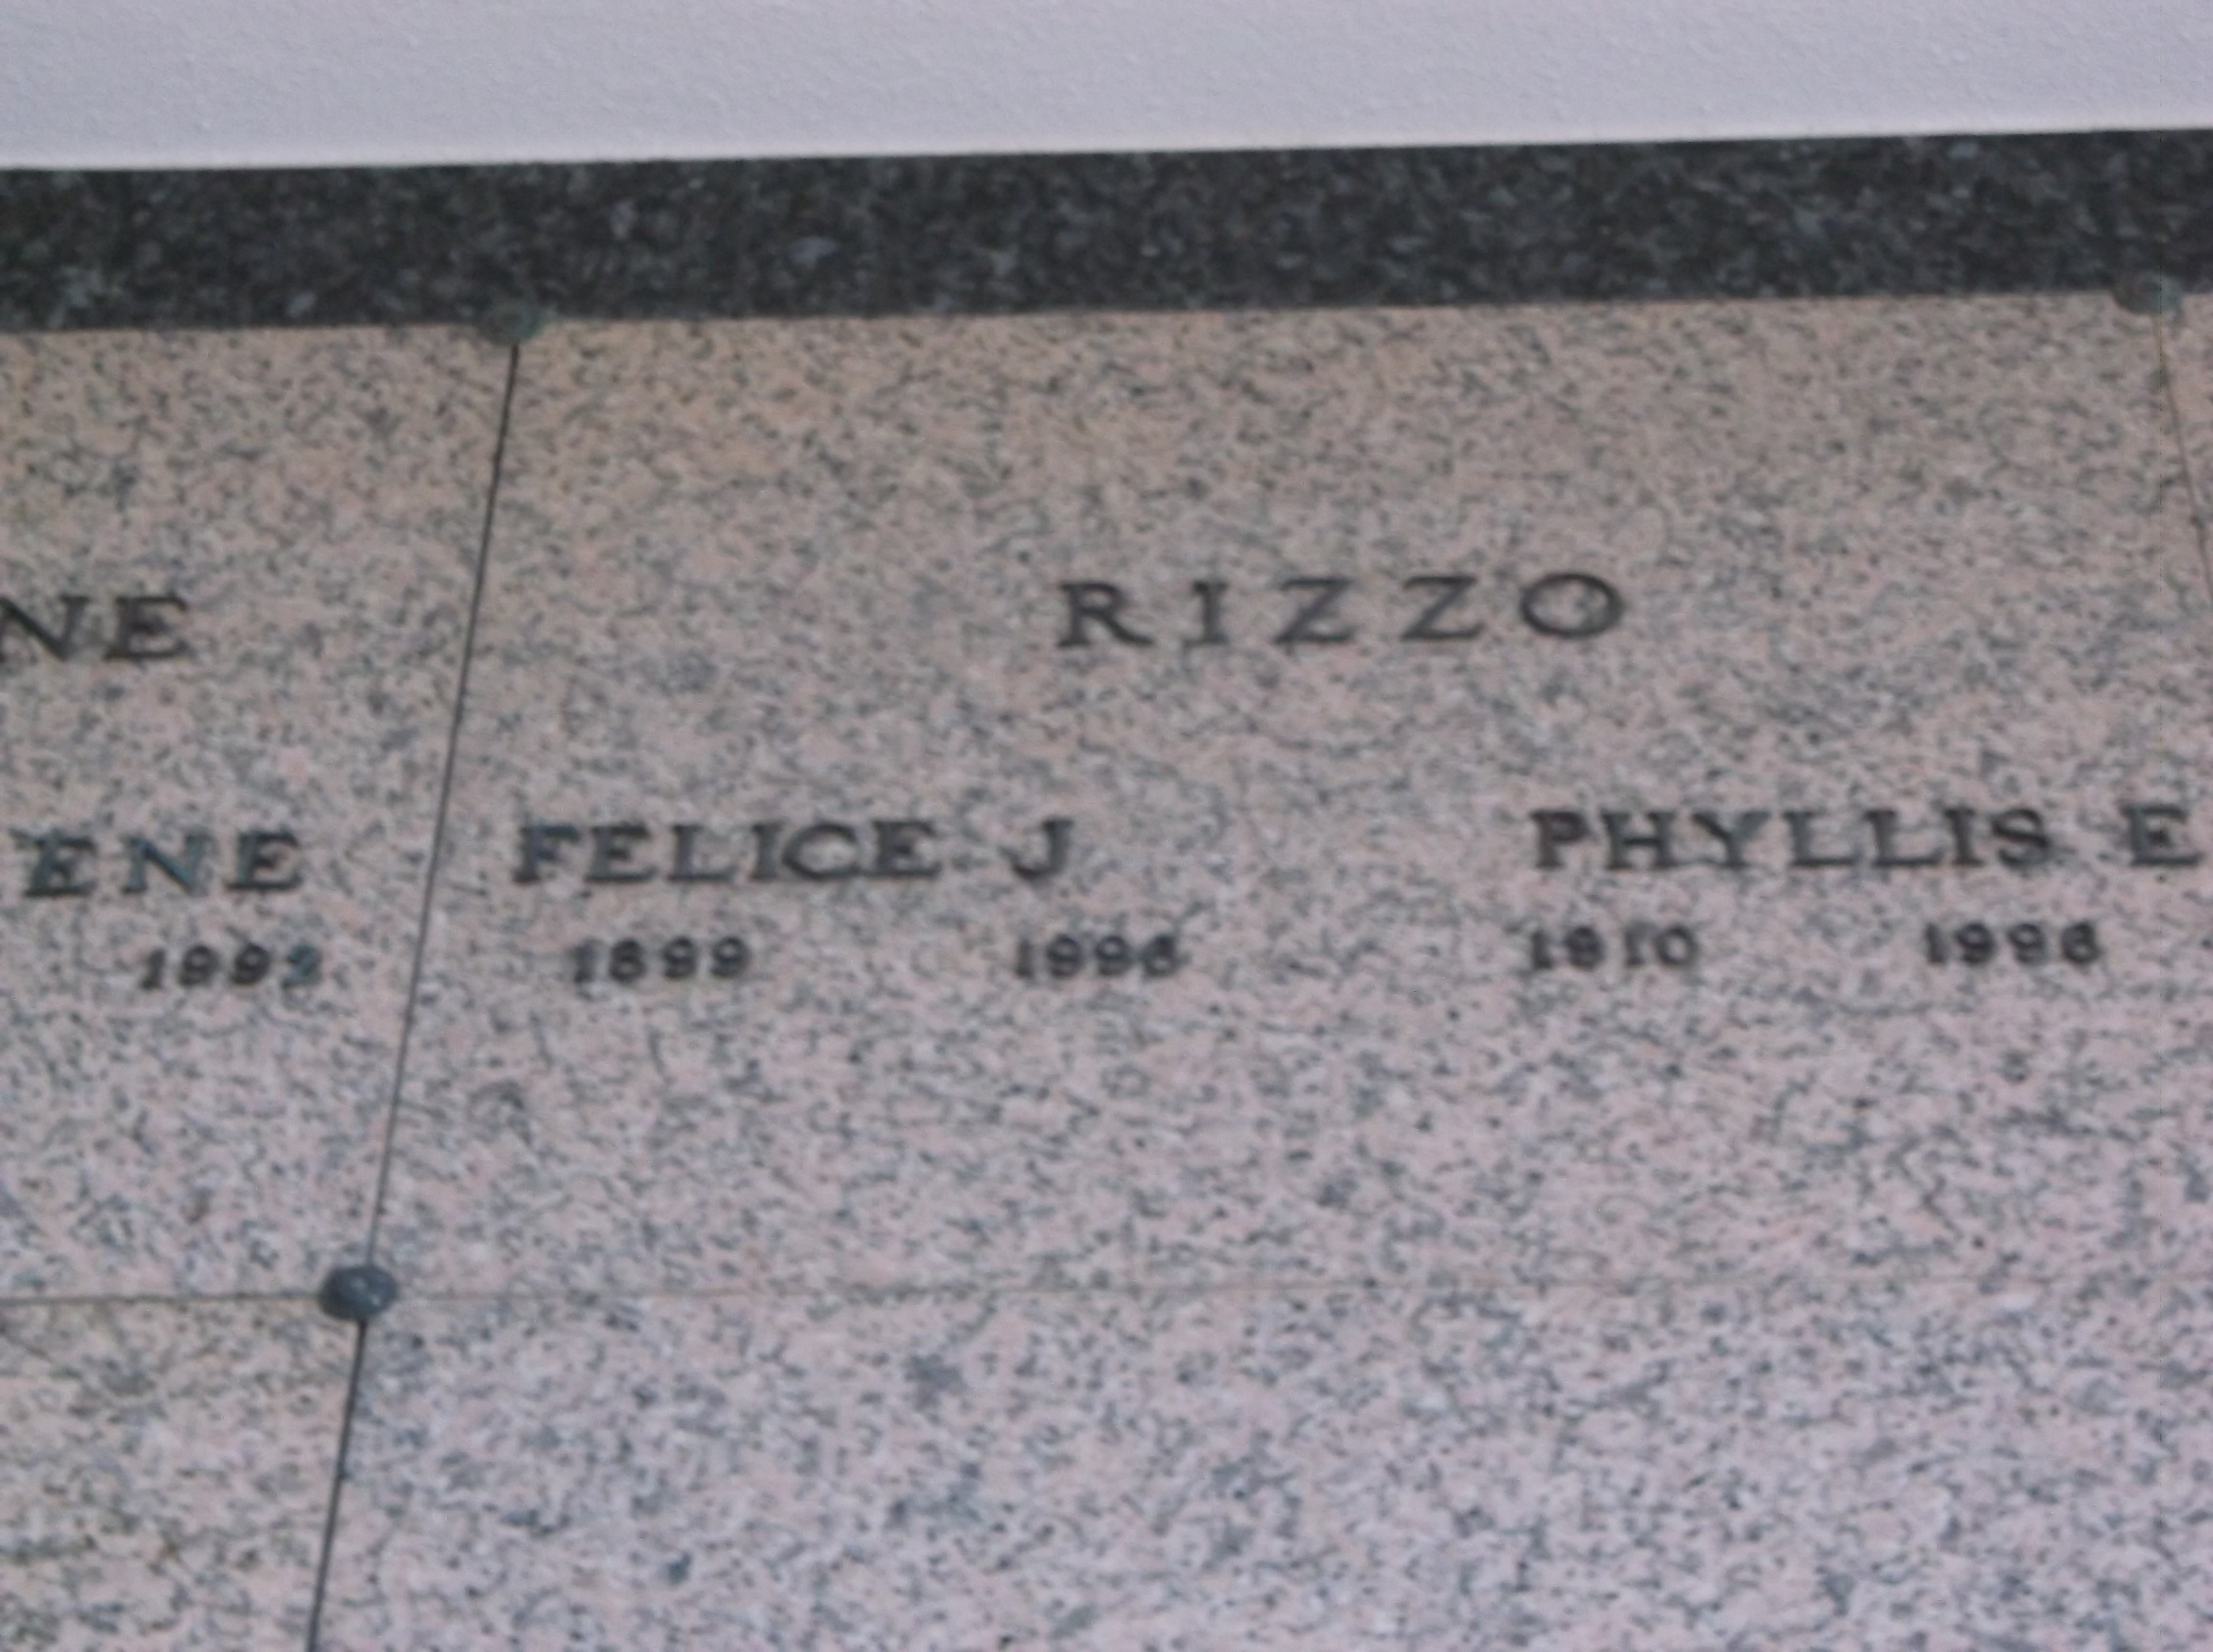 Phyllis E Rizzo